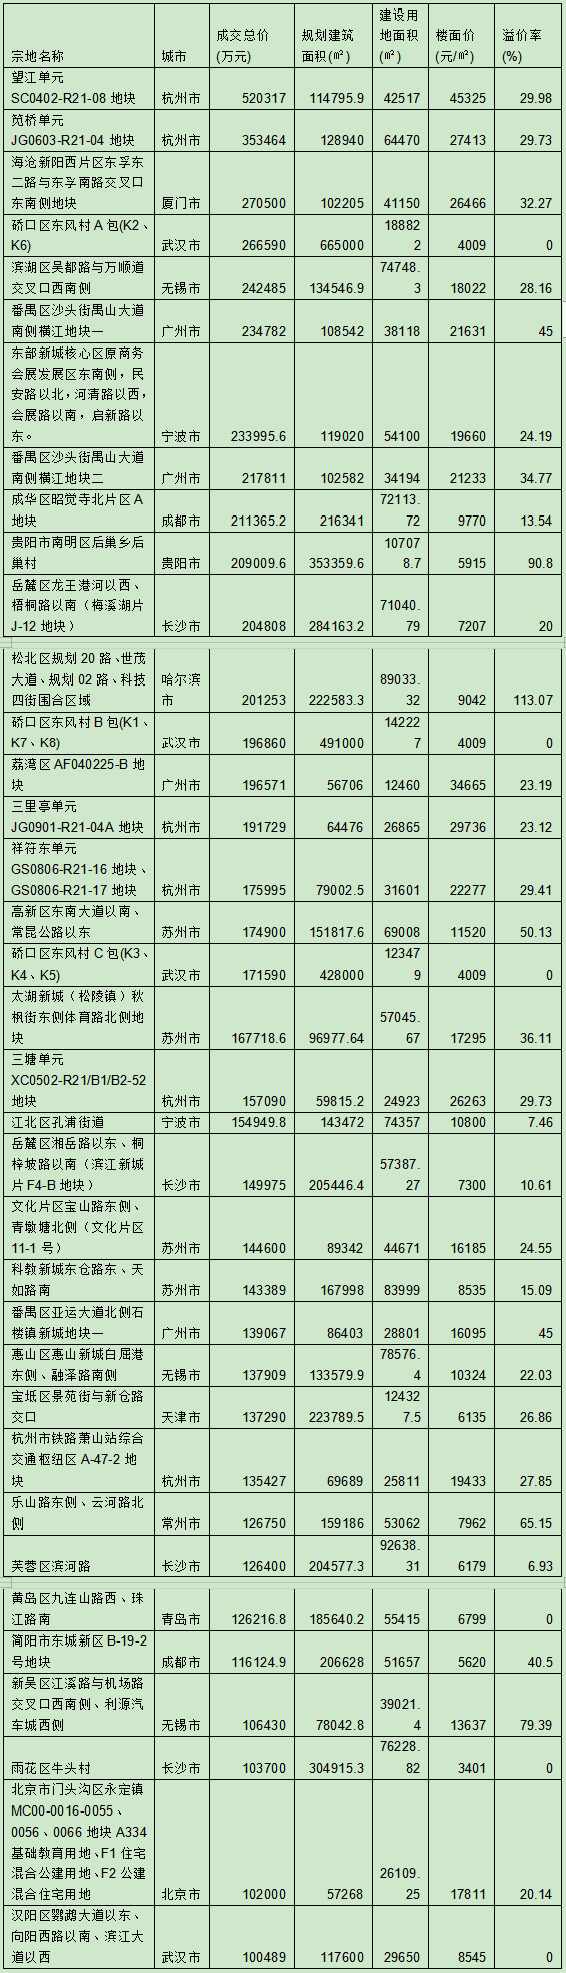 4月热点城市土地市场明显升温 杭州等城土地再破最高限价-中国网地产